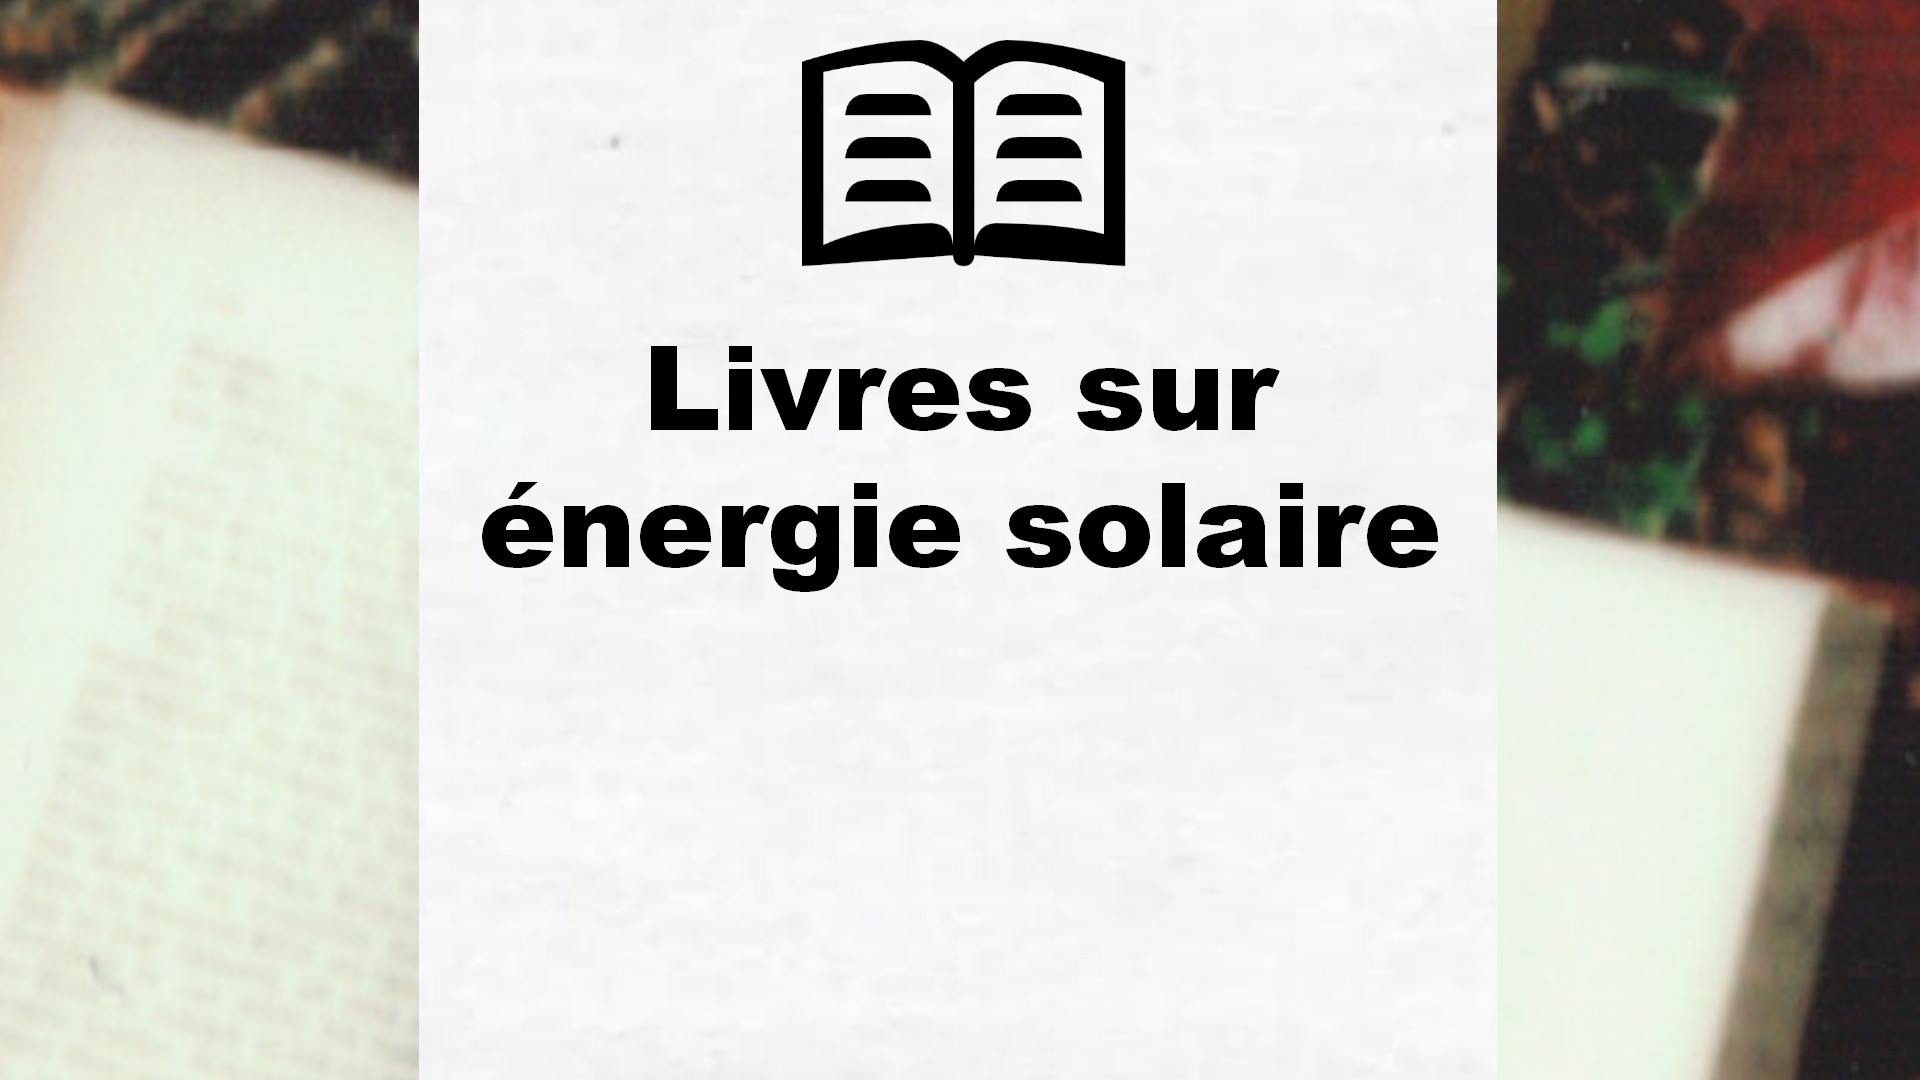 Livres sur énergie solaire